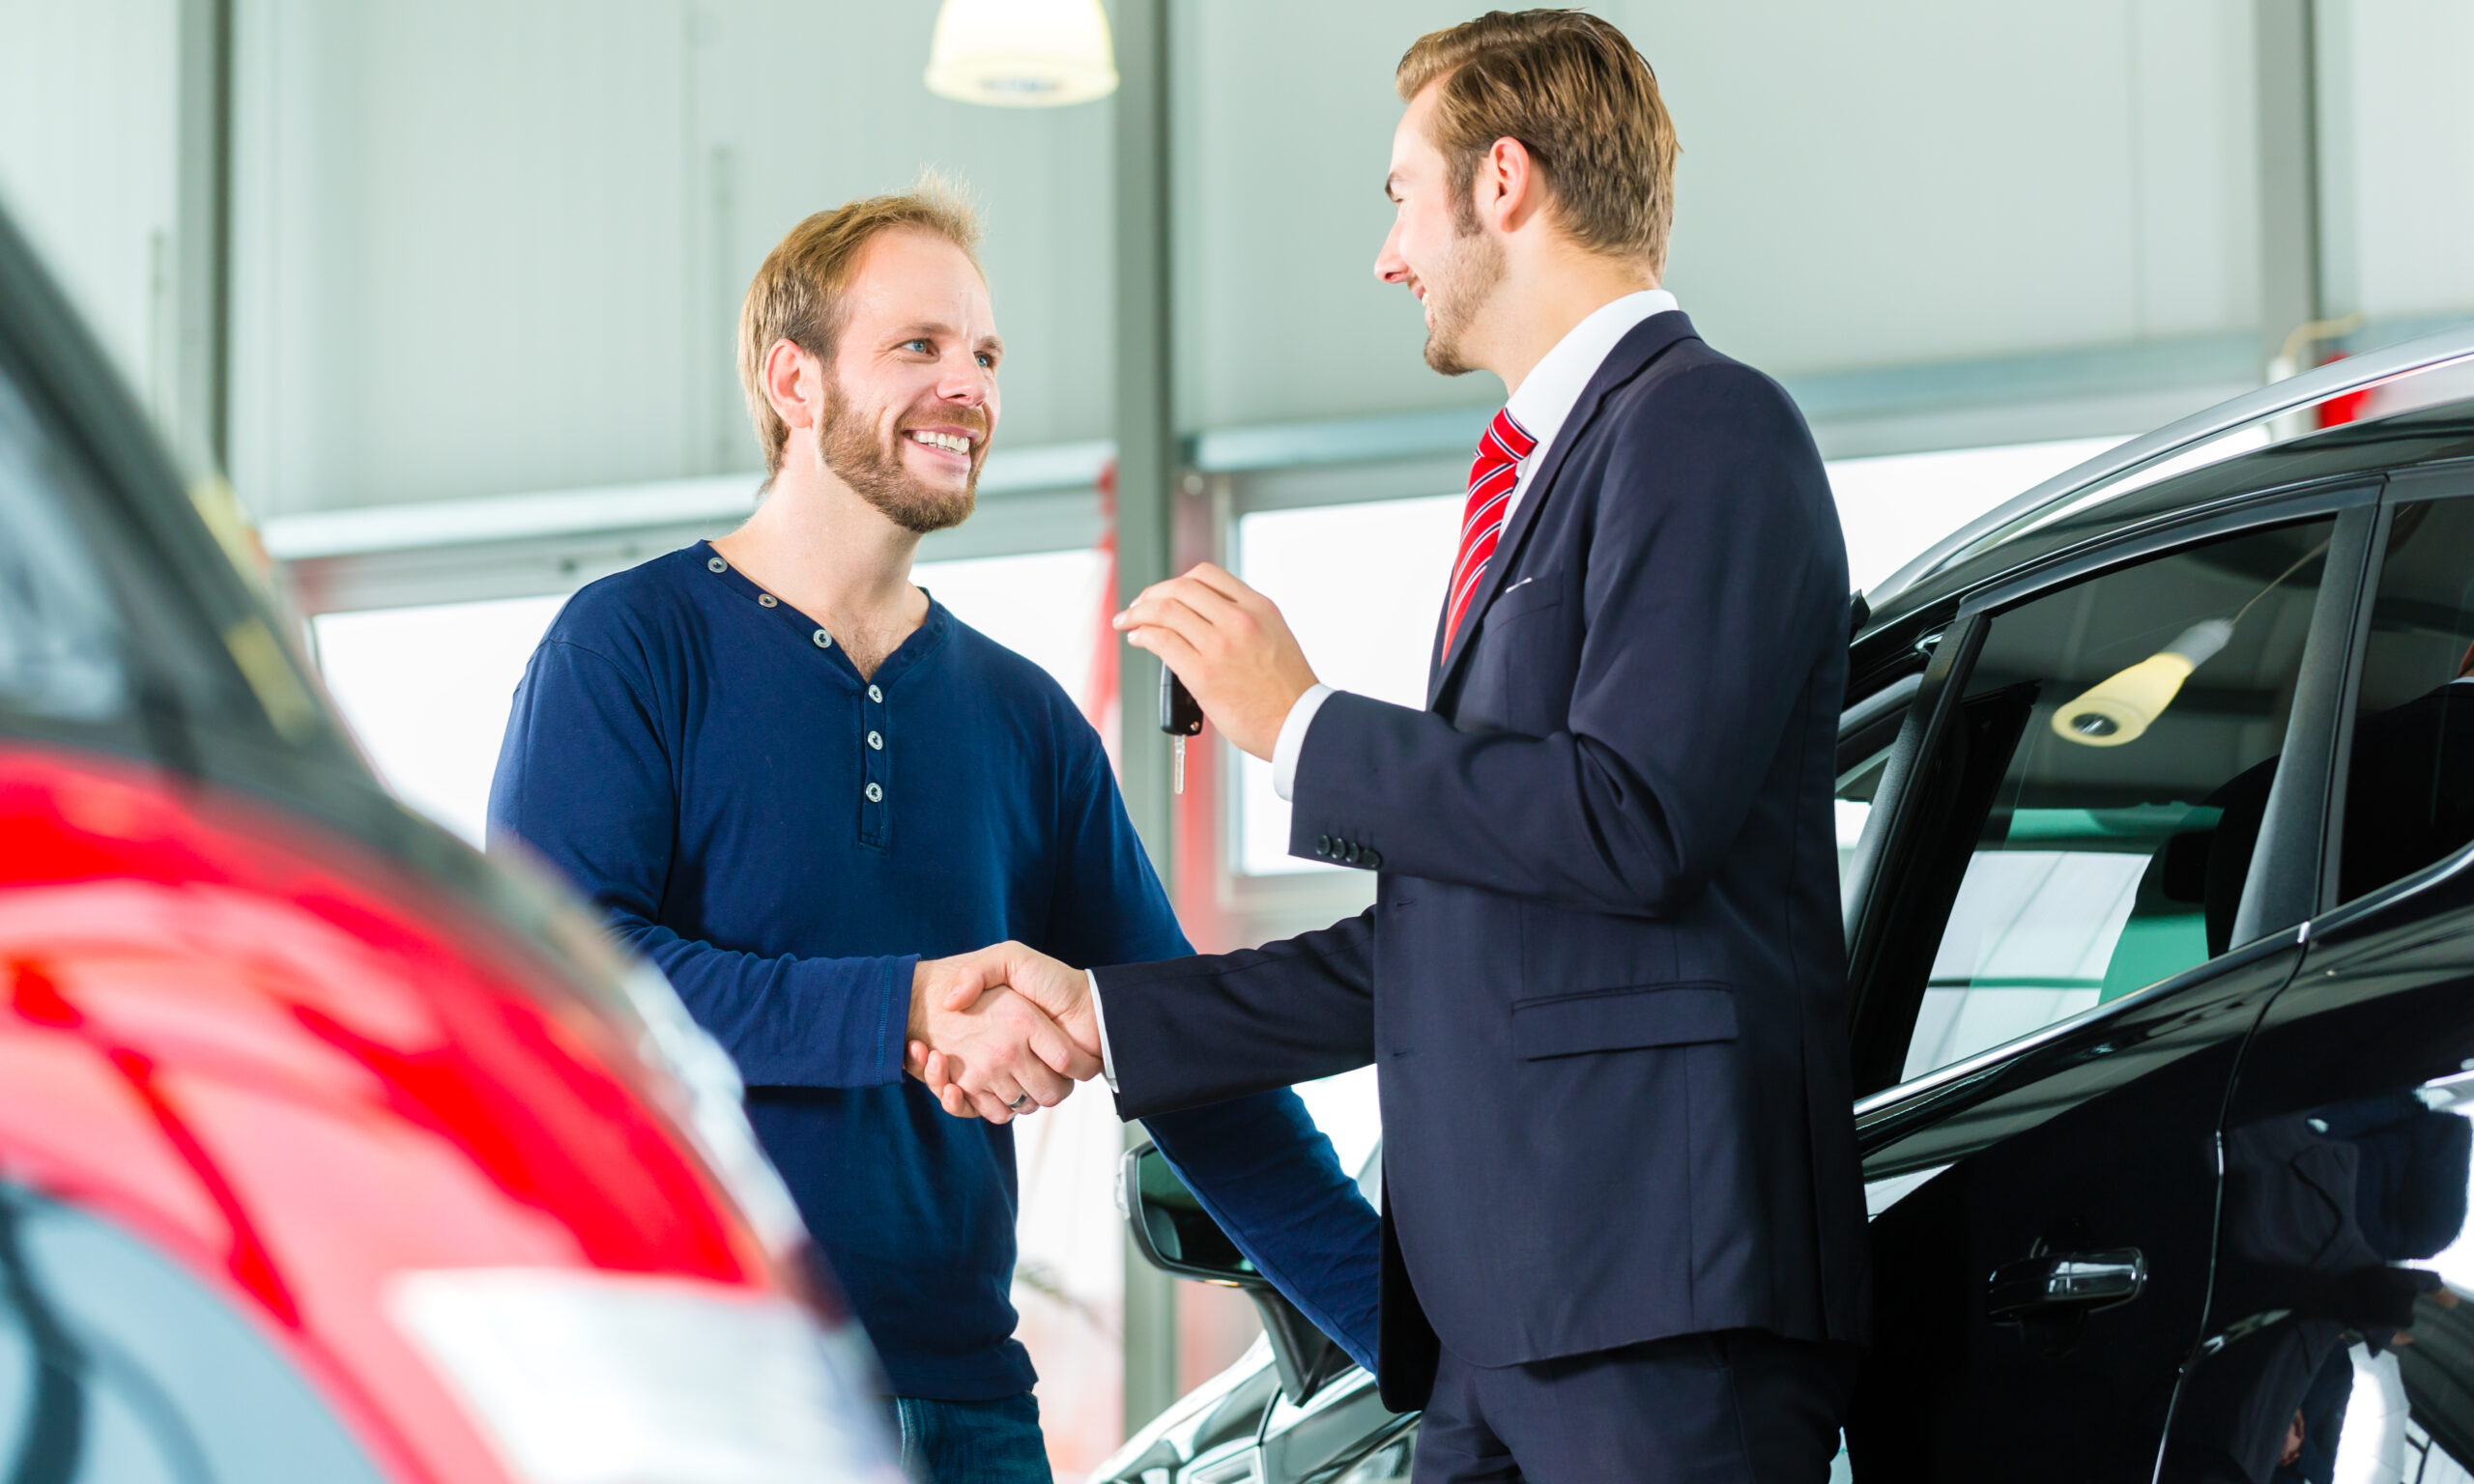 Продажа автомобилей в организациях